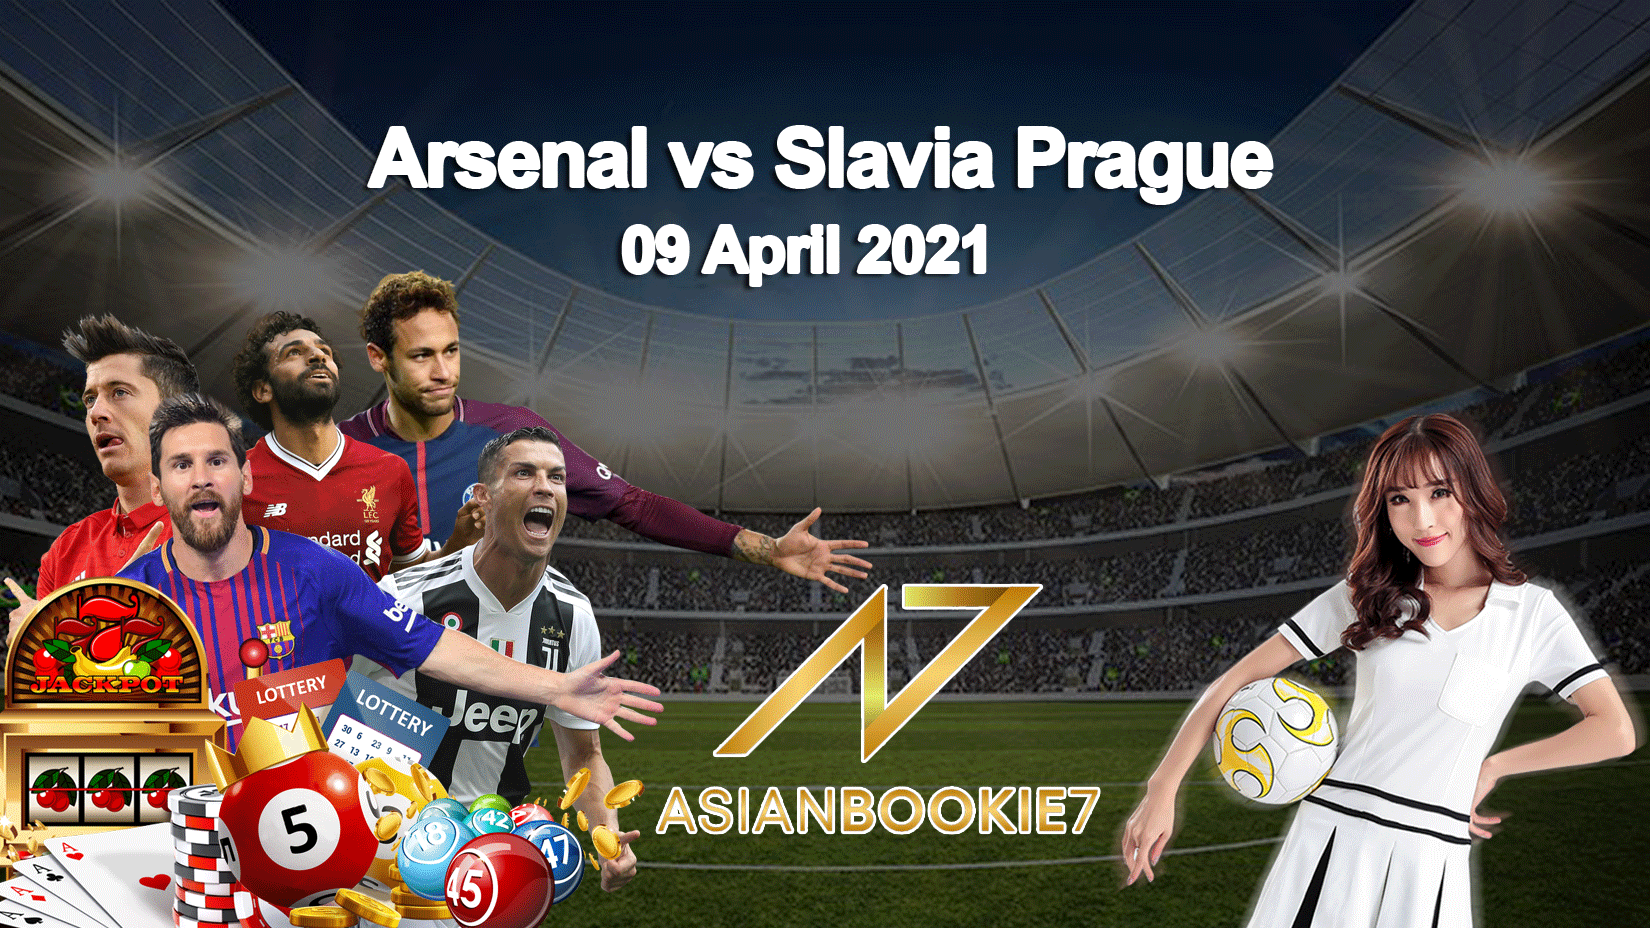 Prediksi-Arsenal-vs-Slavia-Prague-09-April-2021